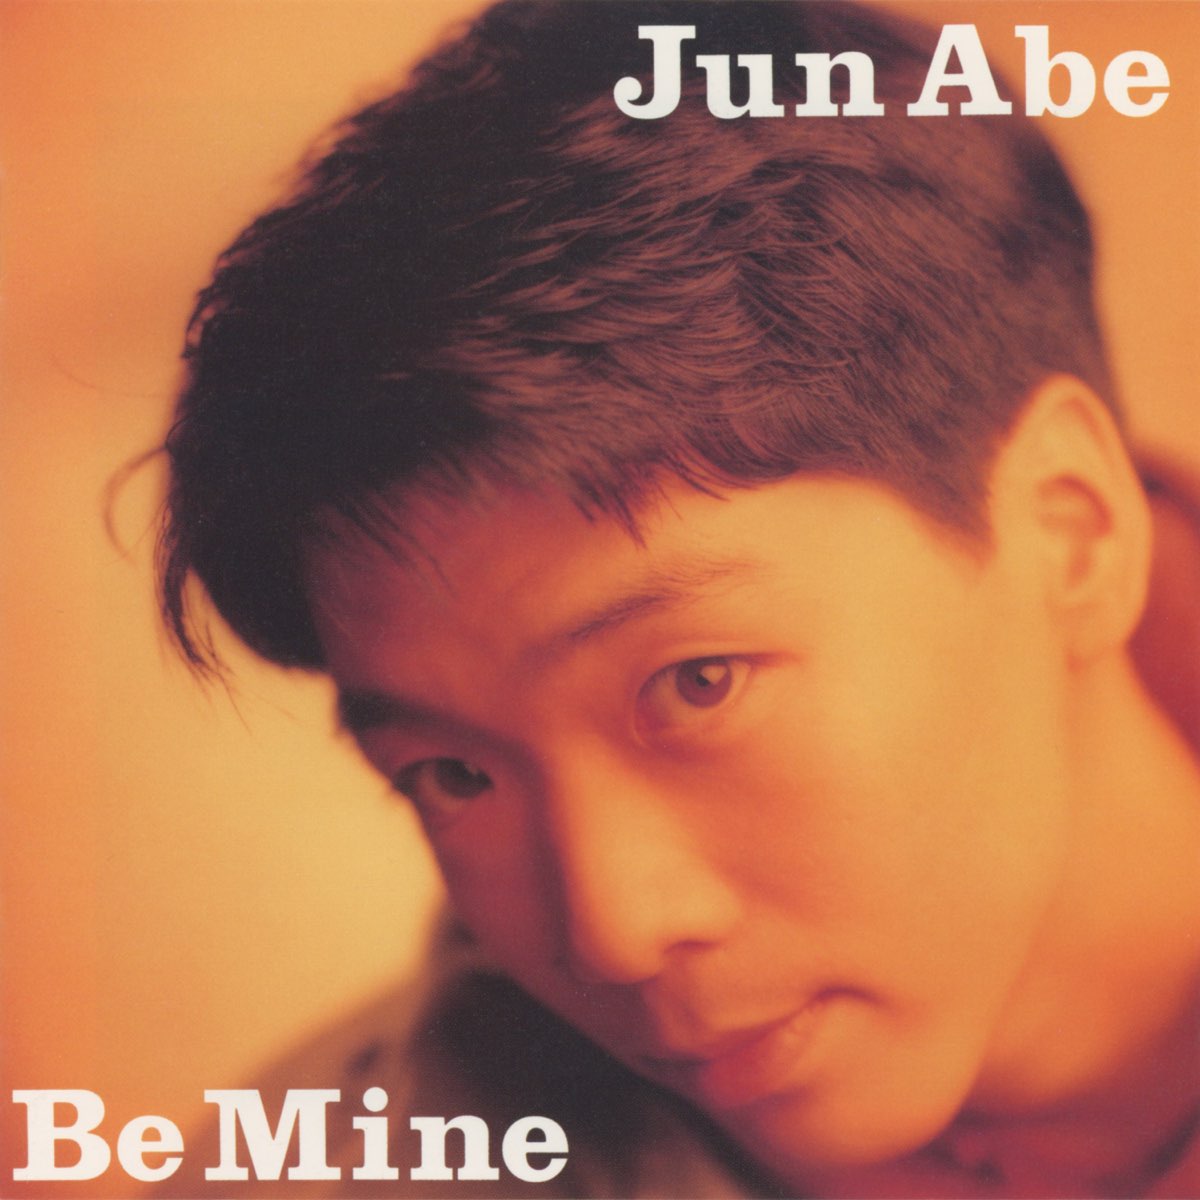 安部純 JUN ABE/ビー・マイン Be Mine